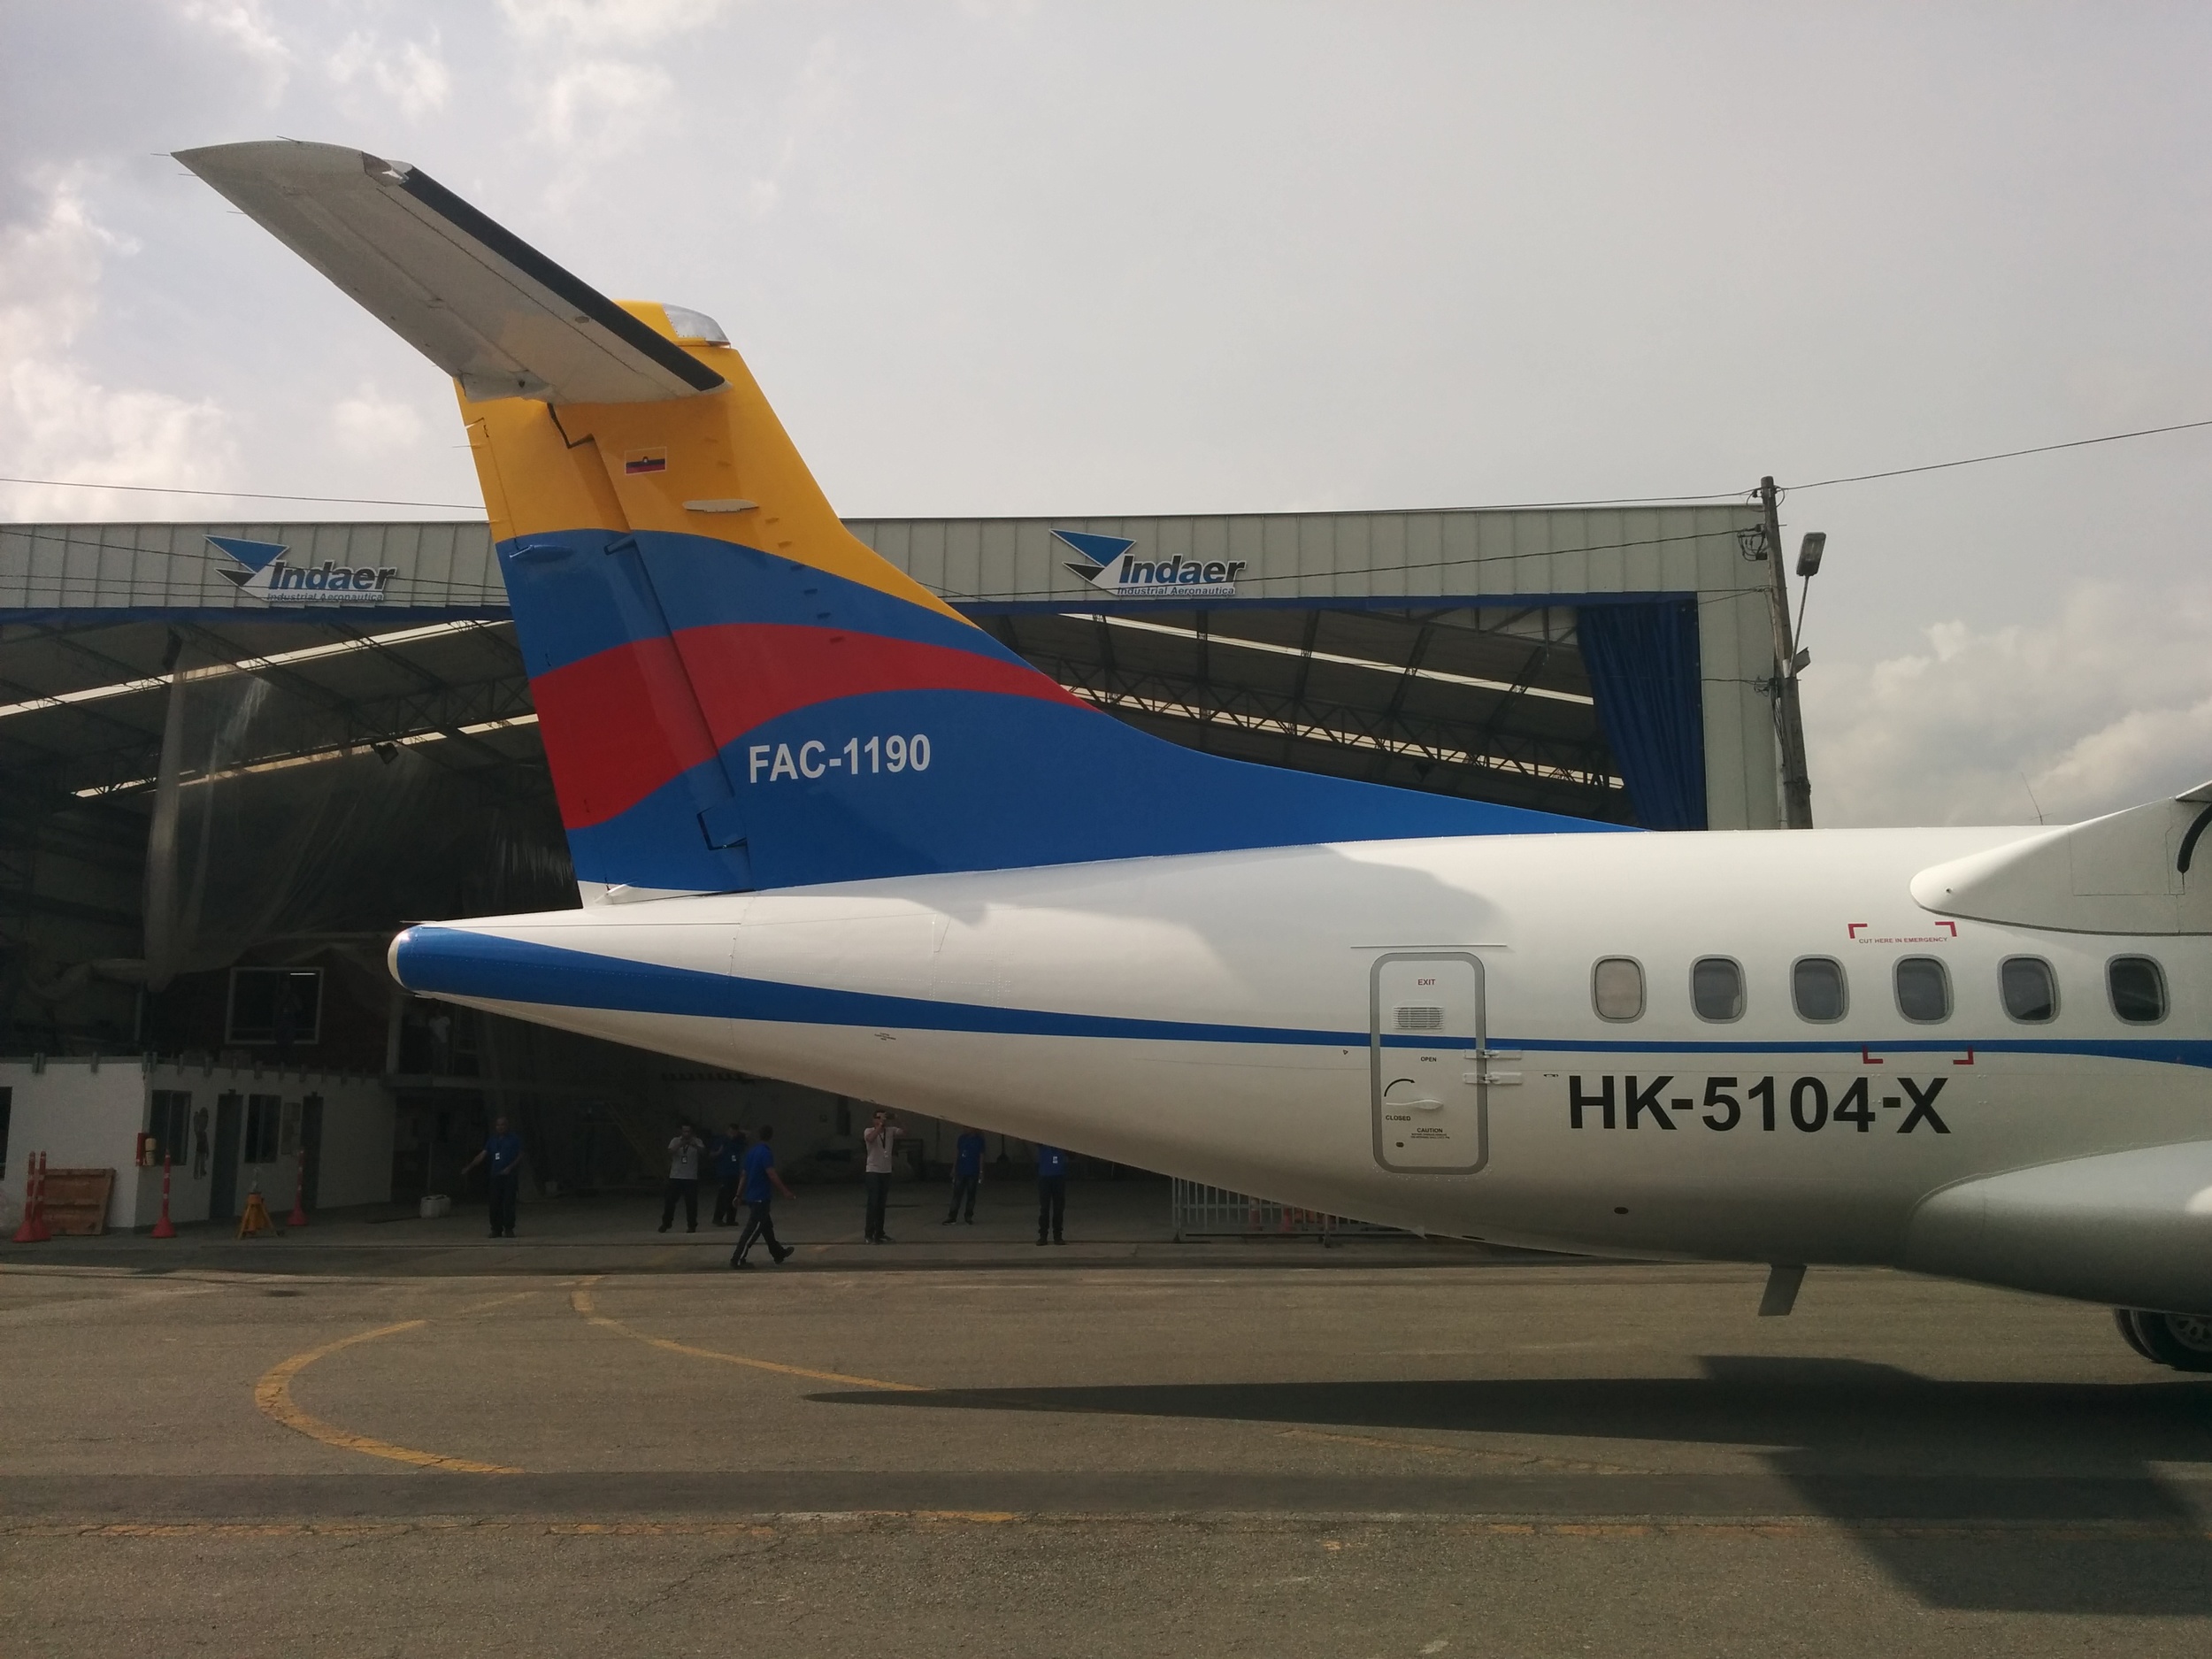 ATR 72 and ATR 42 aircraft paint livery